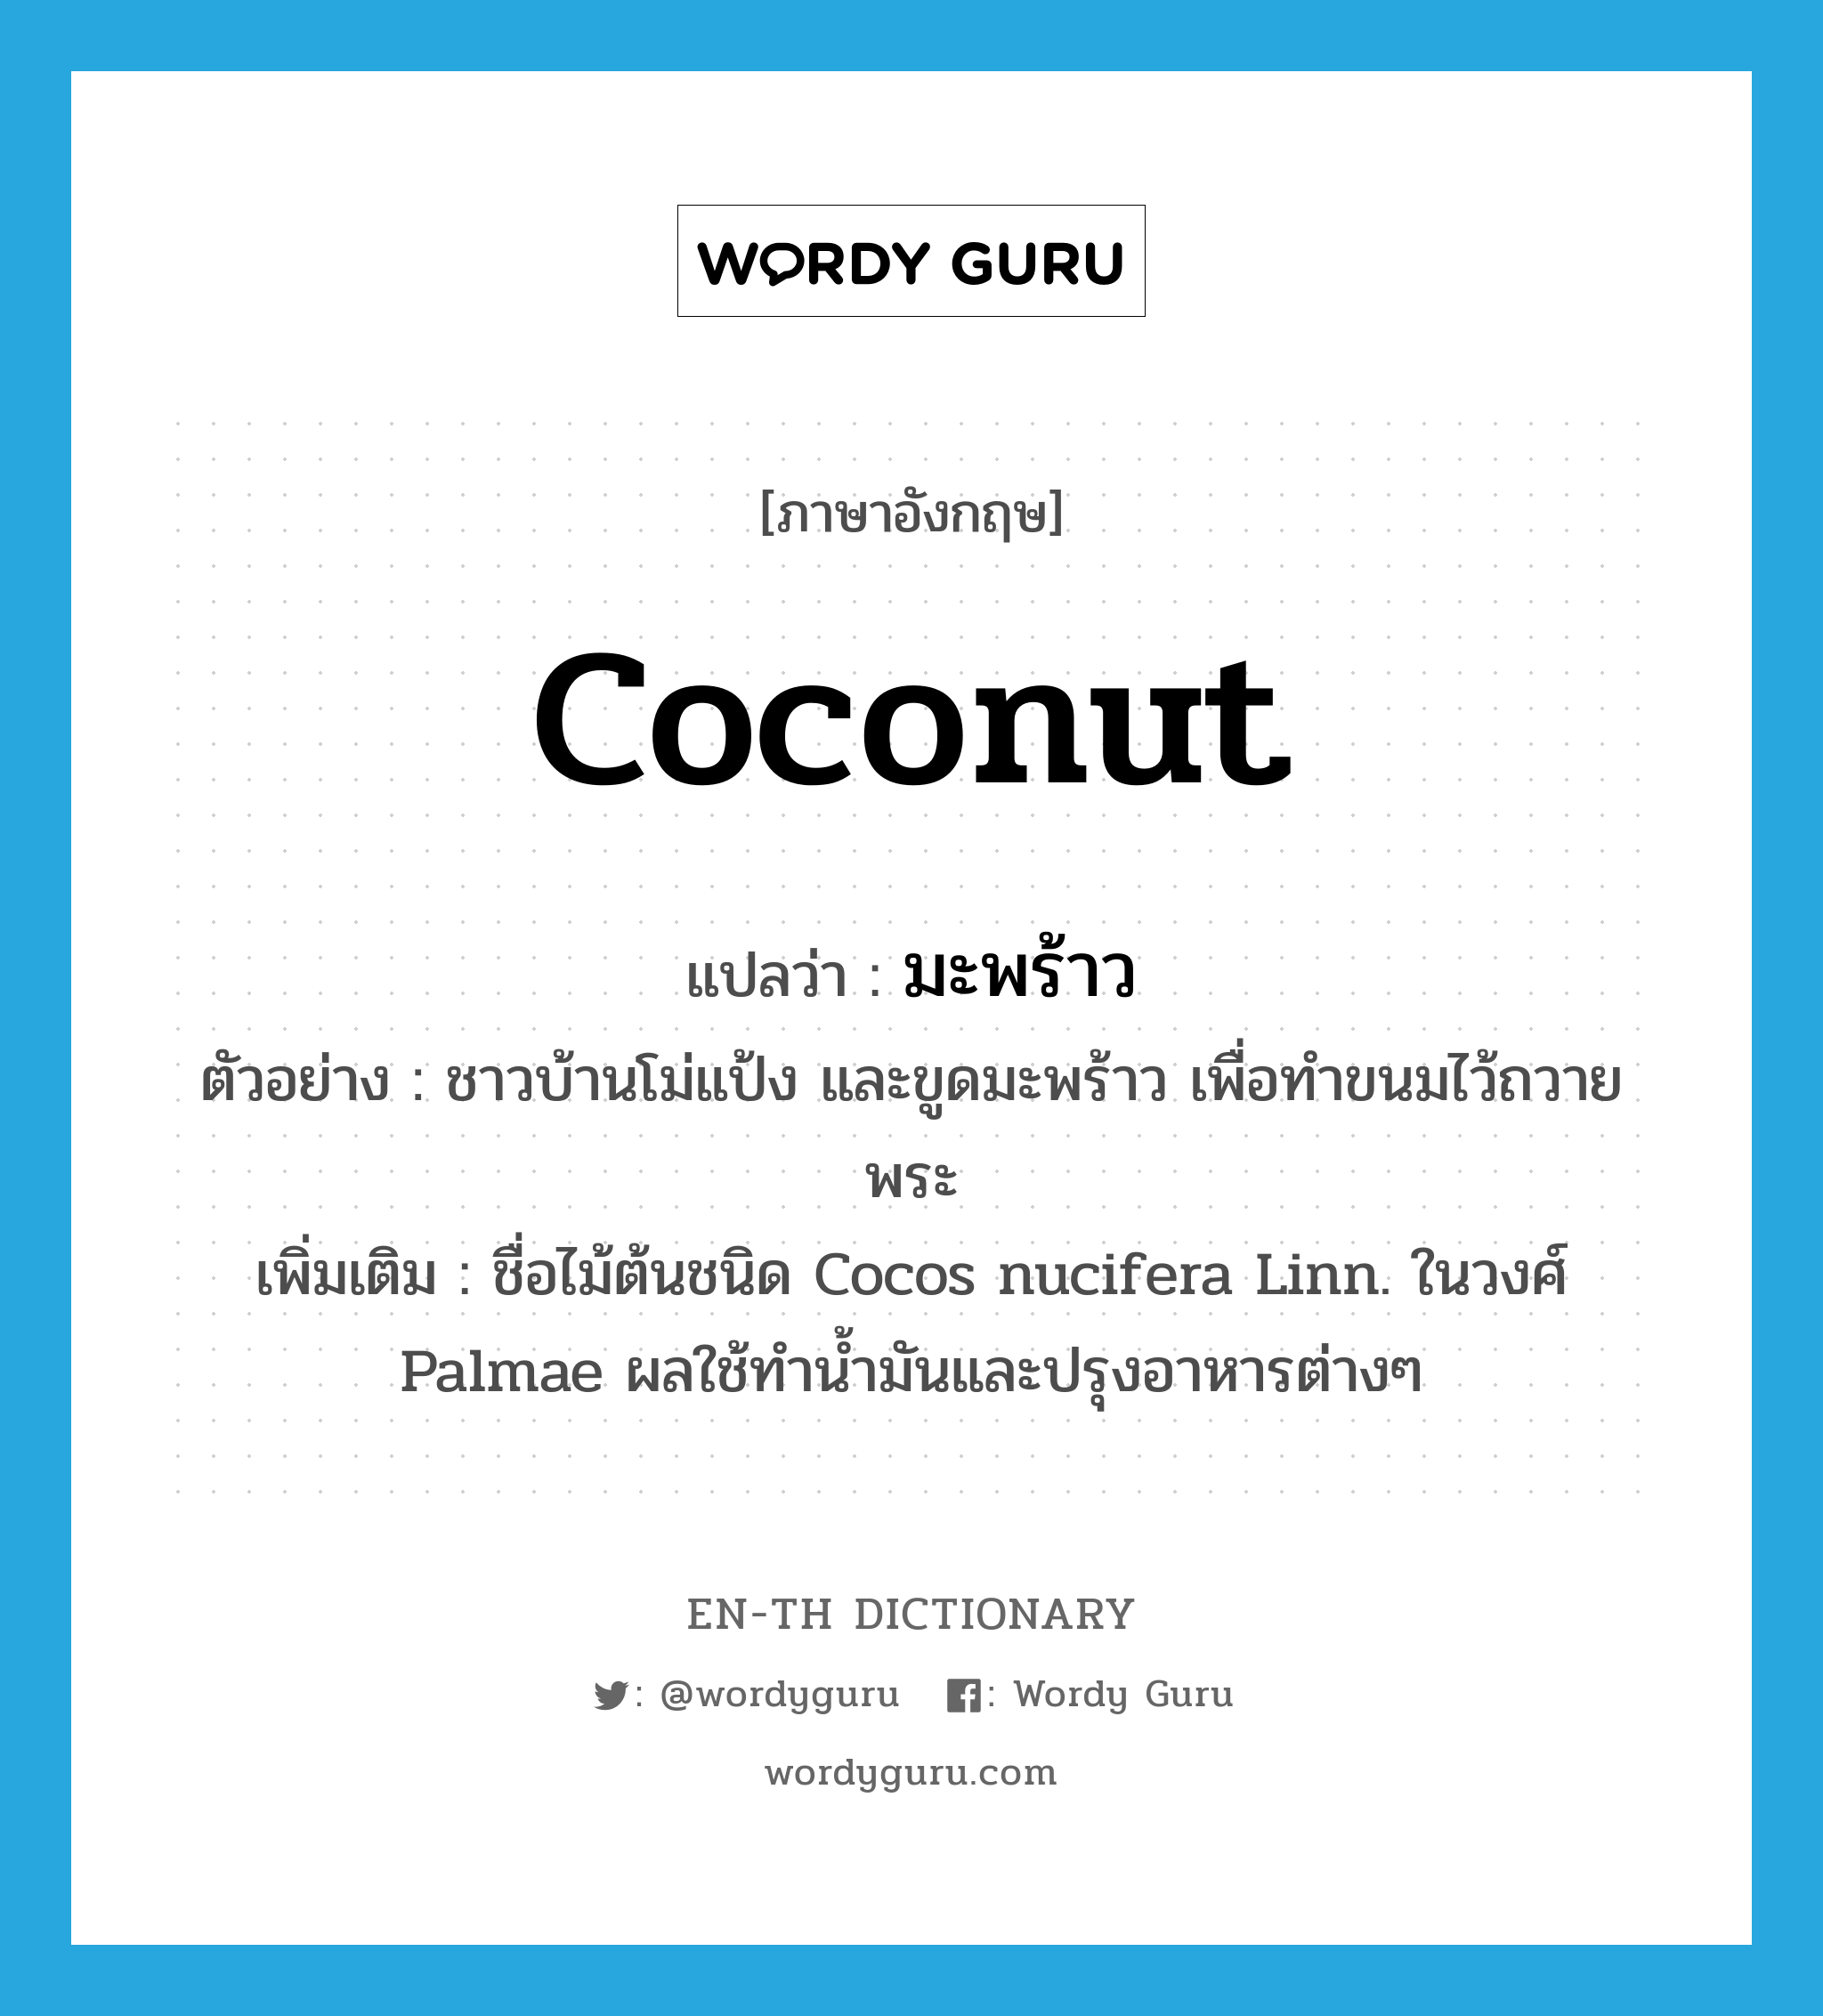 coconut แปลว่า?, คำศัพท์ภาษาอังกฤษ coconut แปลว่า มะพร้าว ประเภท N ตัวอย่าง ชาวบ้านโม่แป้ง และขูดมะพร้าว เพื่อทำขนมไว้ถวายพระ เพิ่มเติม ชื่อไม้ต้นชนิด Cocos nucifera Linn. ในวงศ์ Palmae ผลใช้ทำน้ำมันและปรุงอาหารต่างๆ หมวด N